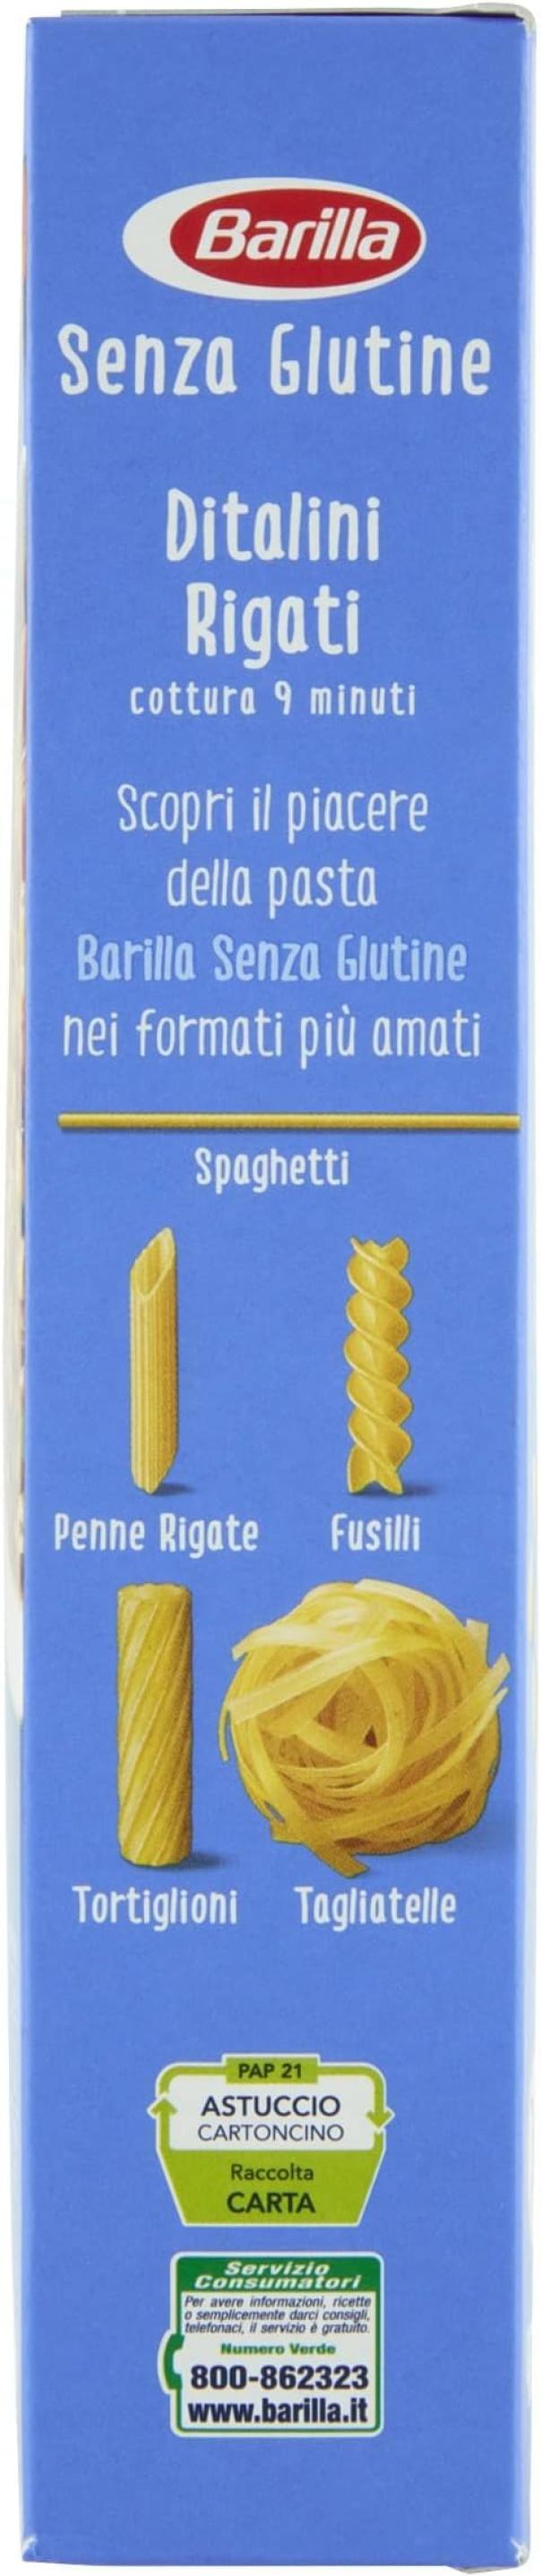 pasta-ditalini-senza-glutine-barilla-400gr-2